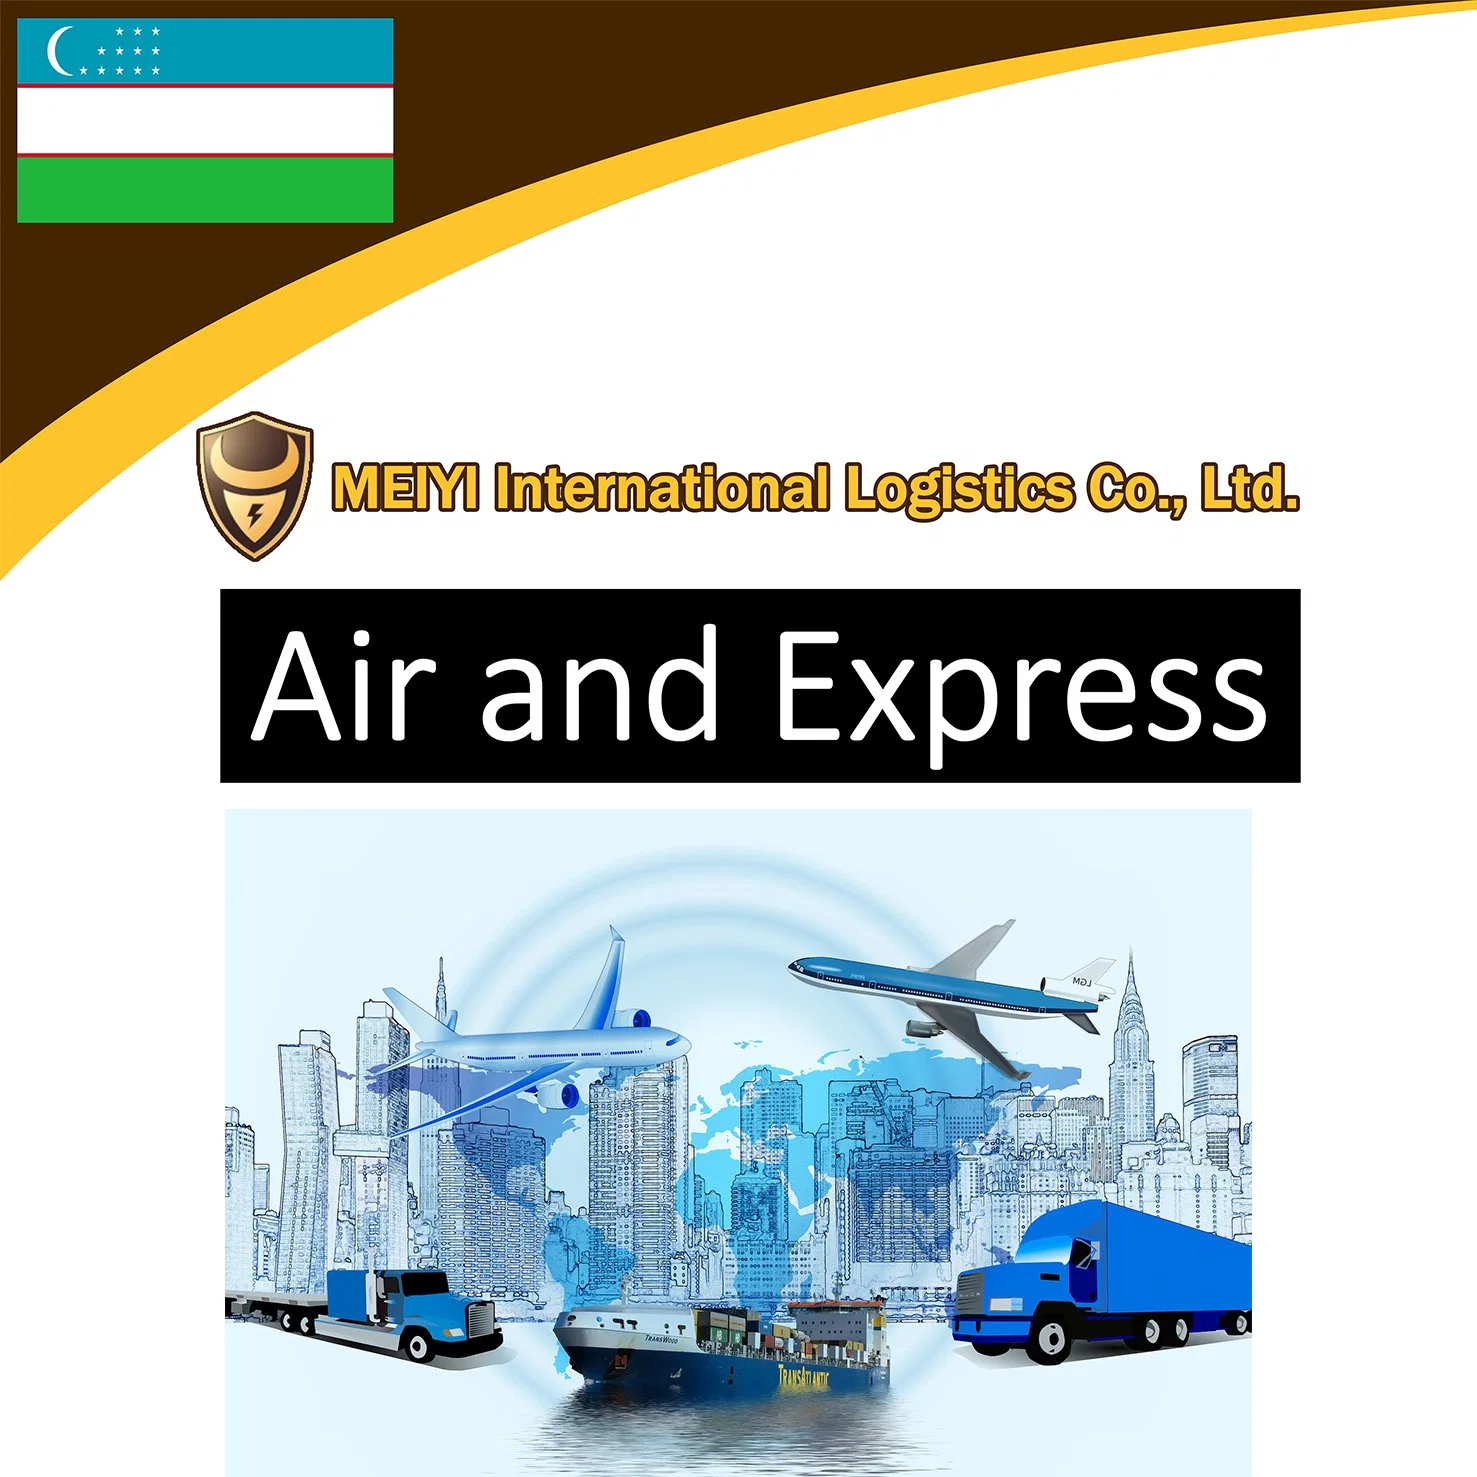 Servicio de logística entrega de envío a Tashkent agente roro transporte aéreo transporte aéreo carga servicio de mensajería para los compradores alibaba′s entrega urgente